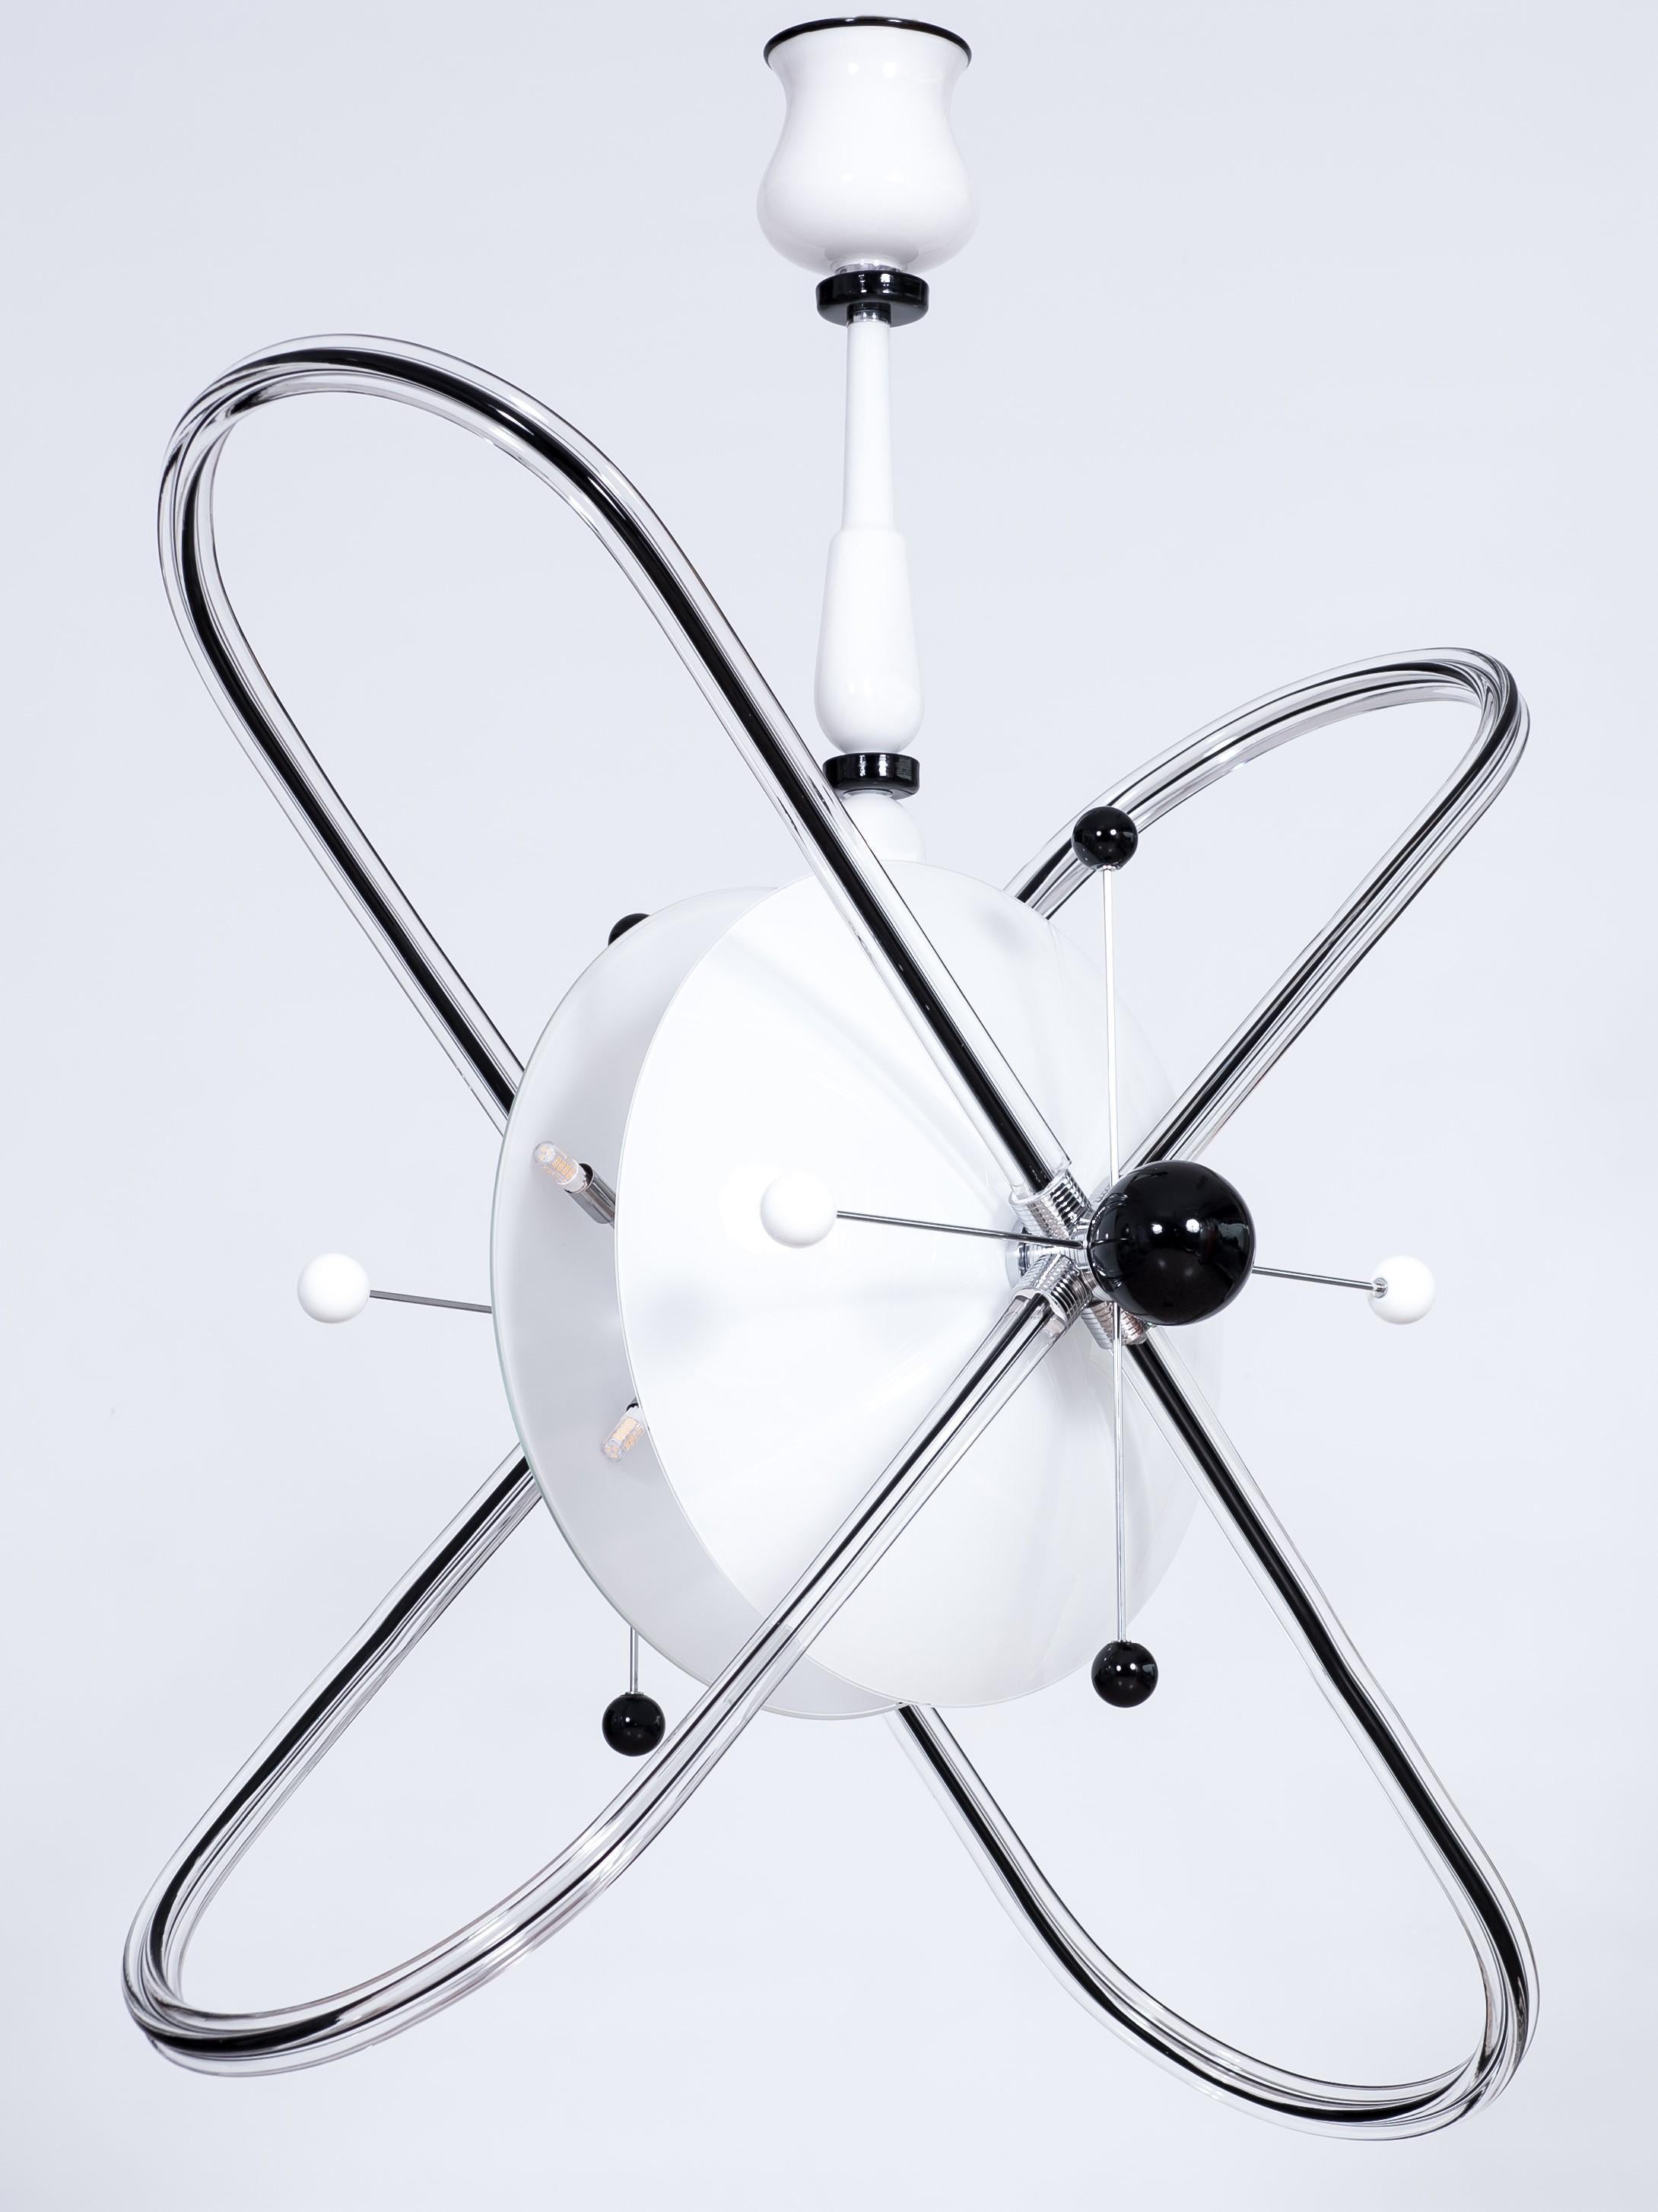 Contemporary Design Atom Kronleuchter aus schwarzem und weißem italienischen Murano Glas

Dieser vollständig handgefertigte Kronleuchter aus geblasenem Murano-Glas und Stahl ist eine limitierte Auflage des italienischen Künstlers und Designers